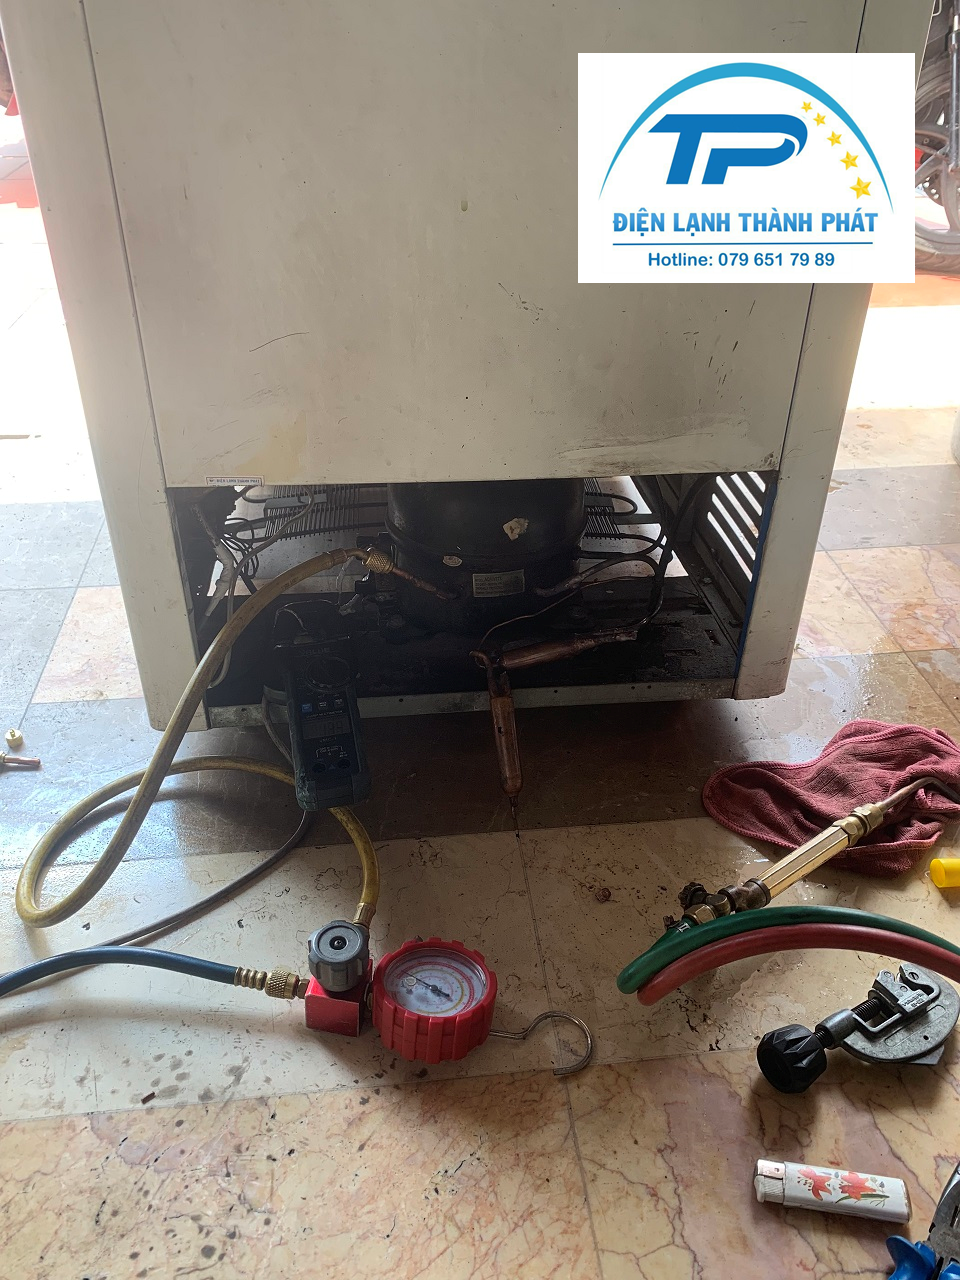 Dịch vụ bơm gas tủ lạnh tại nhà Điện lạnh Thành Phát luôn hỗ trợ cho khách hàng nhiệt tình.